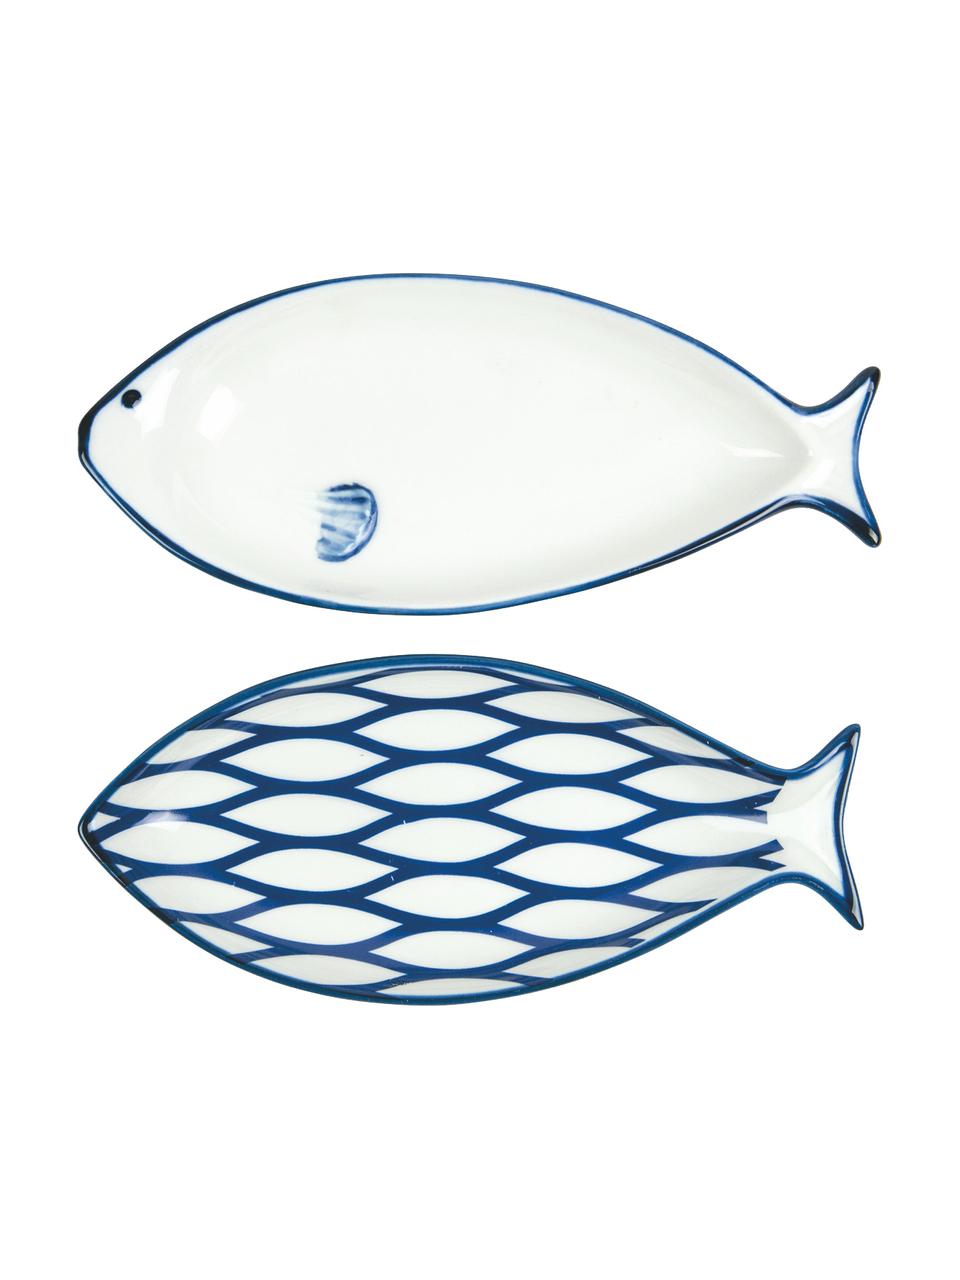 Servierplatten Fish aus Porzellan in Blau/Weiß, L 18 x 8 cm, 2-er-Set, Porzellan, Weiß, Blau, L 18 x B 8 cm